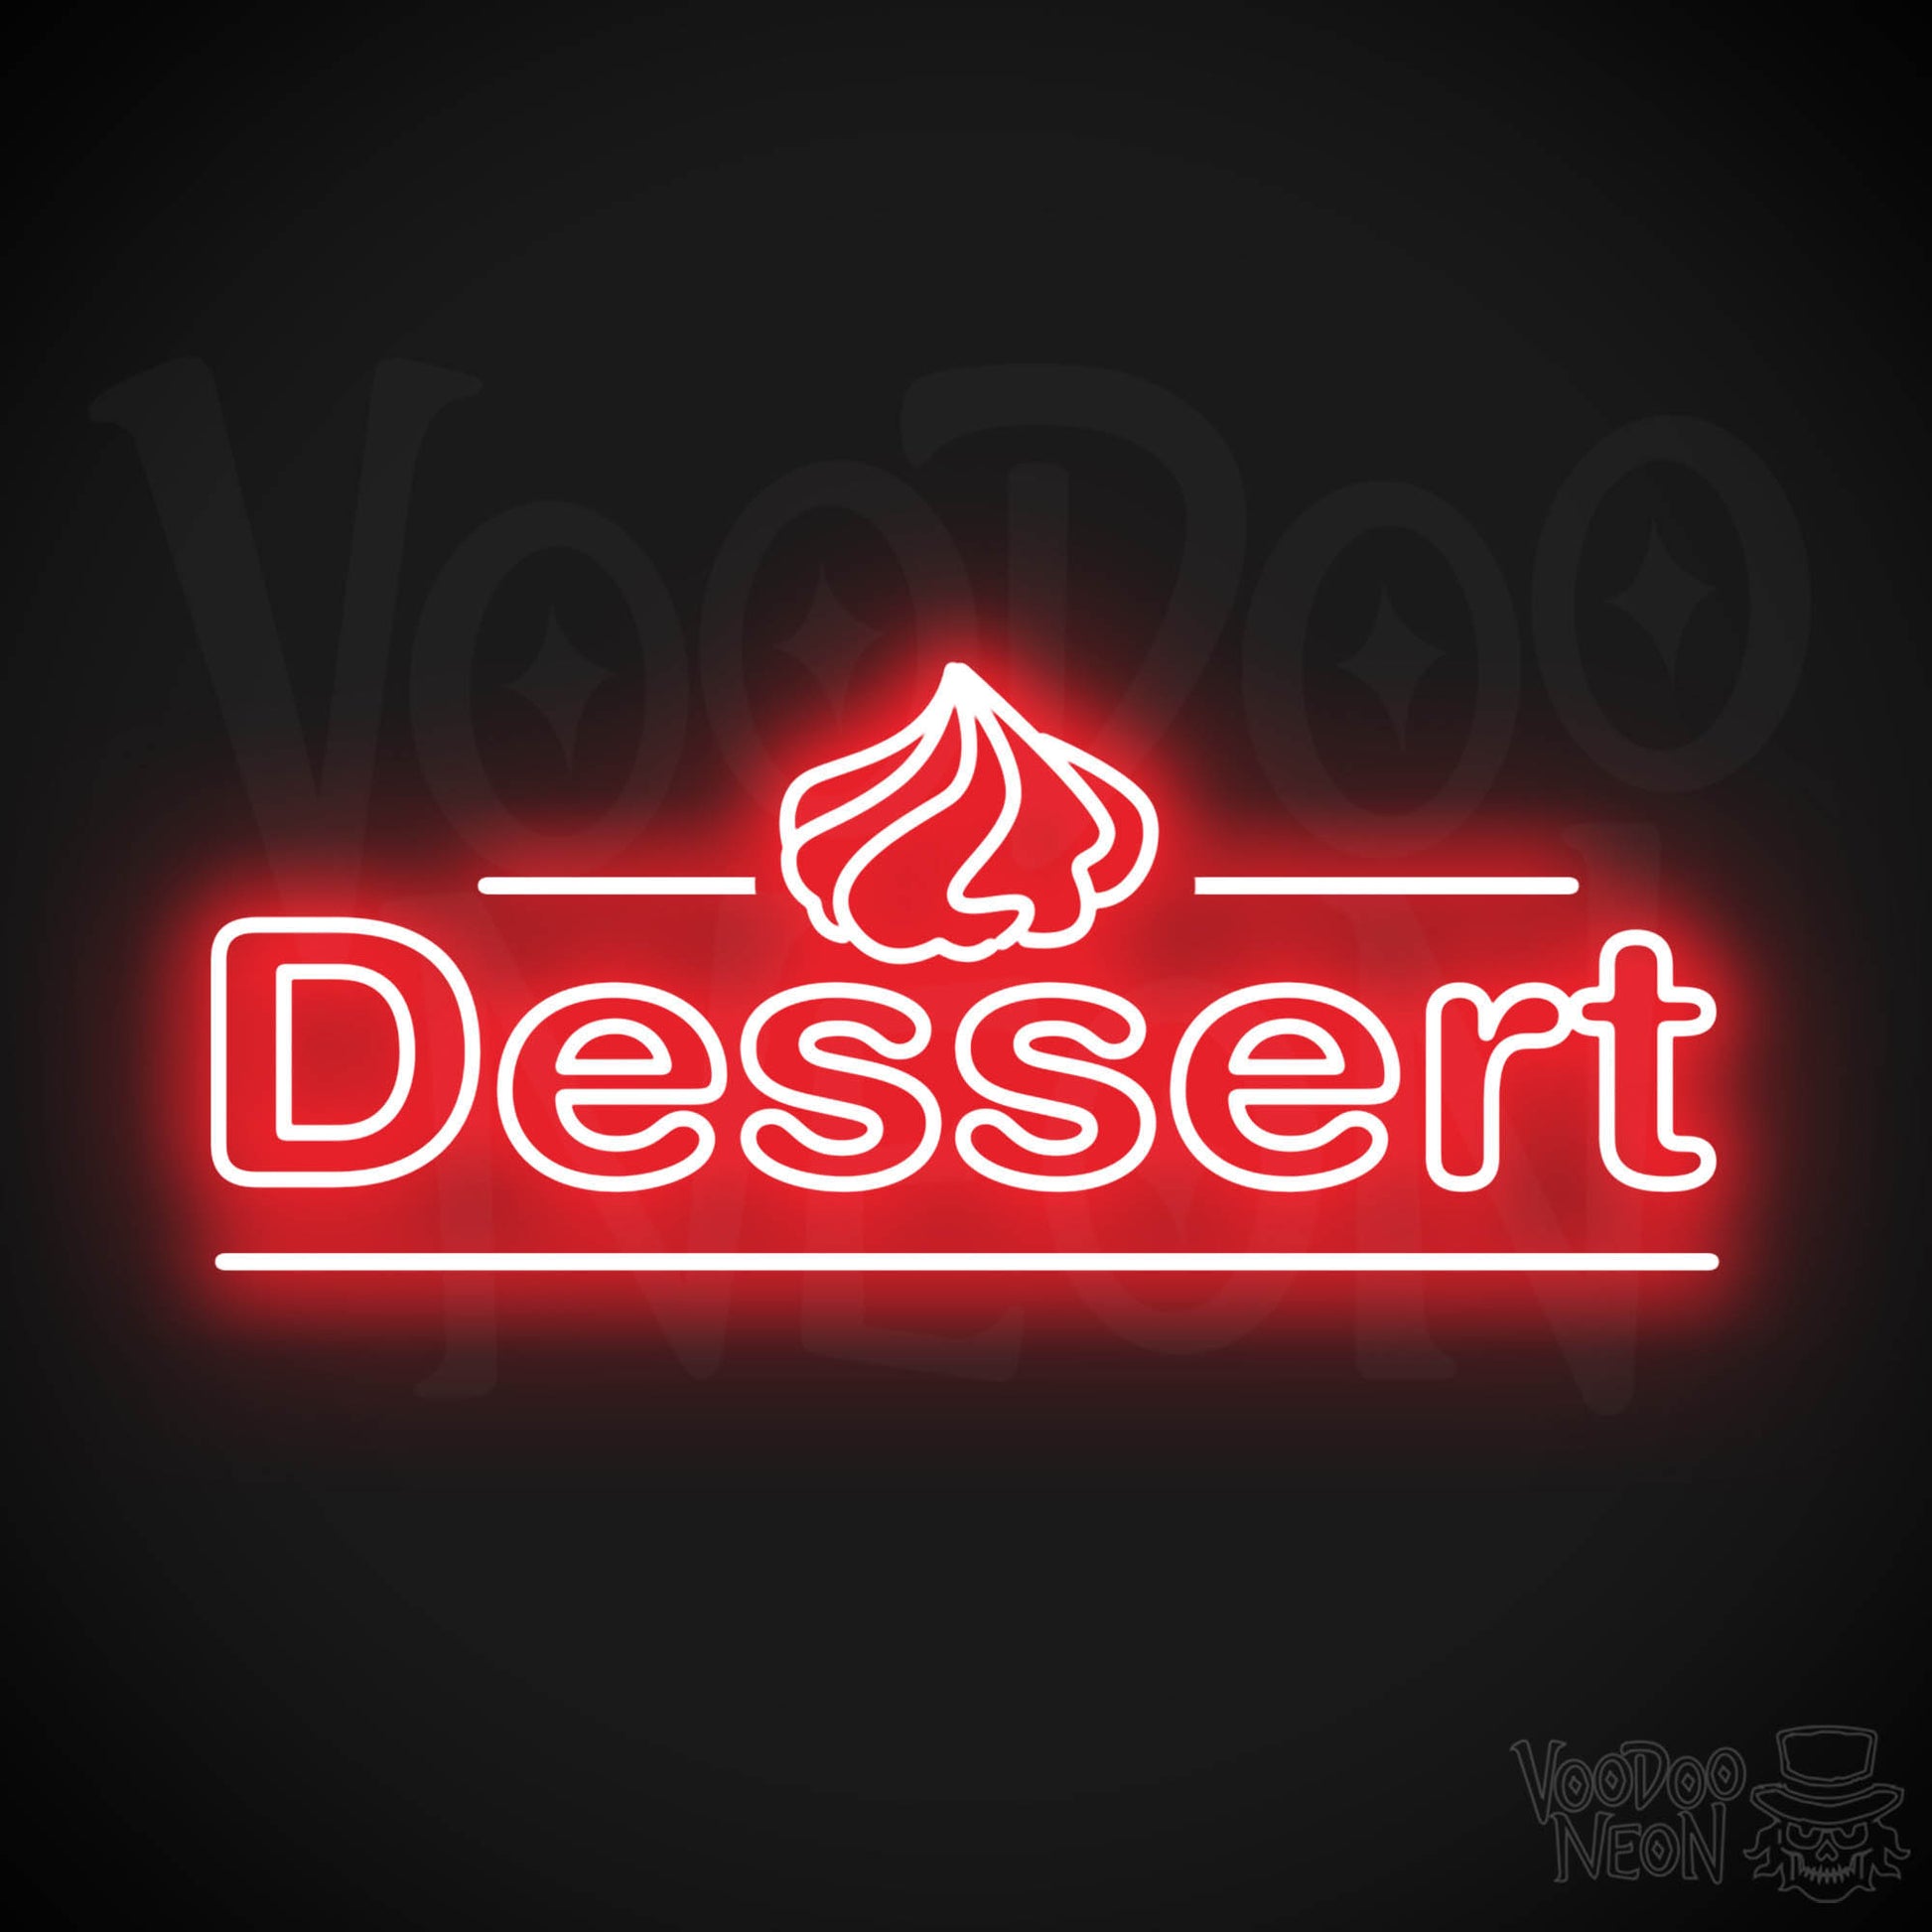 Dessert LED Neon - Red